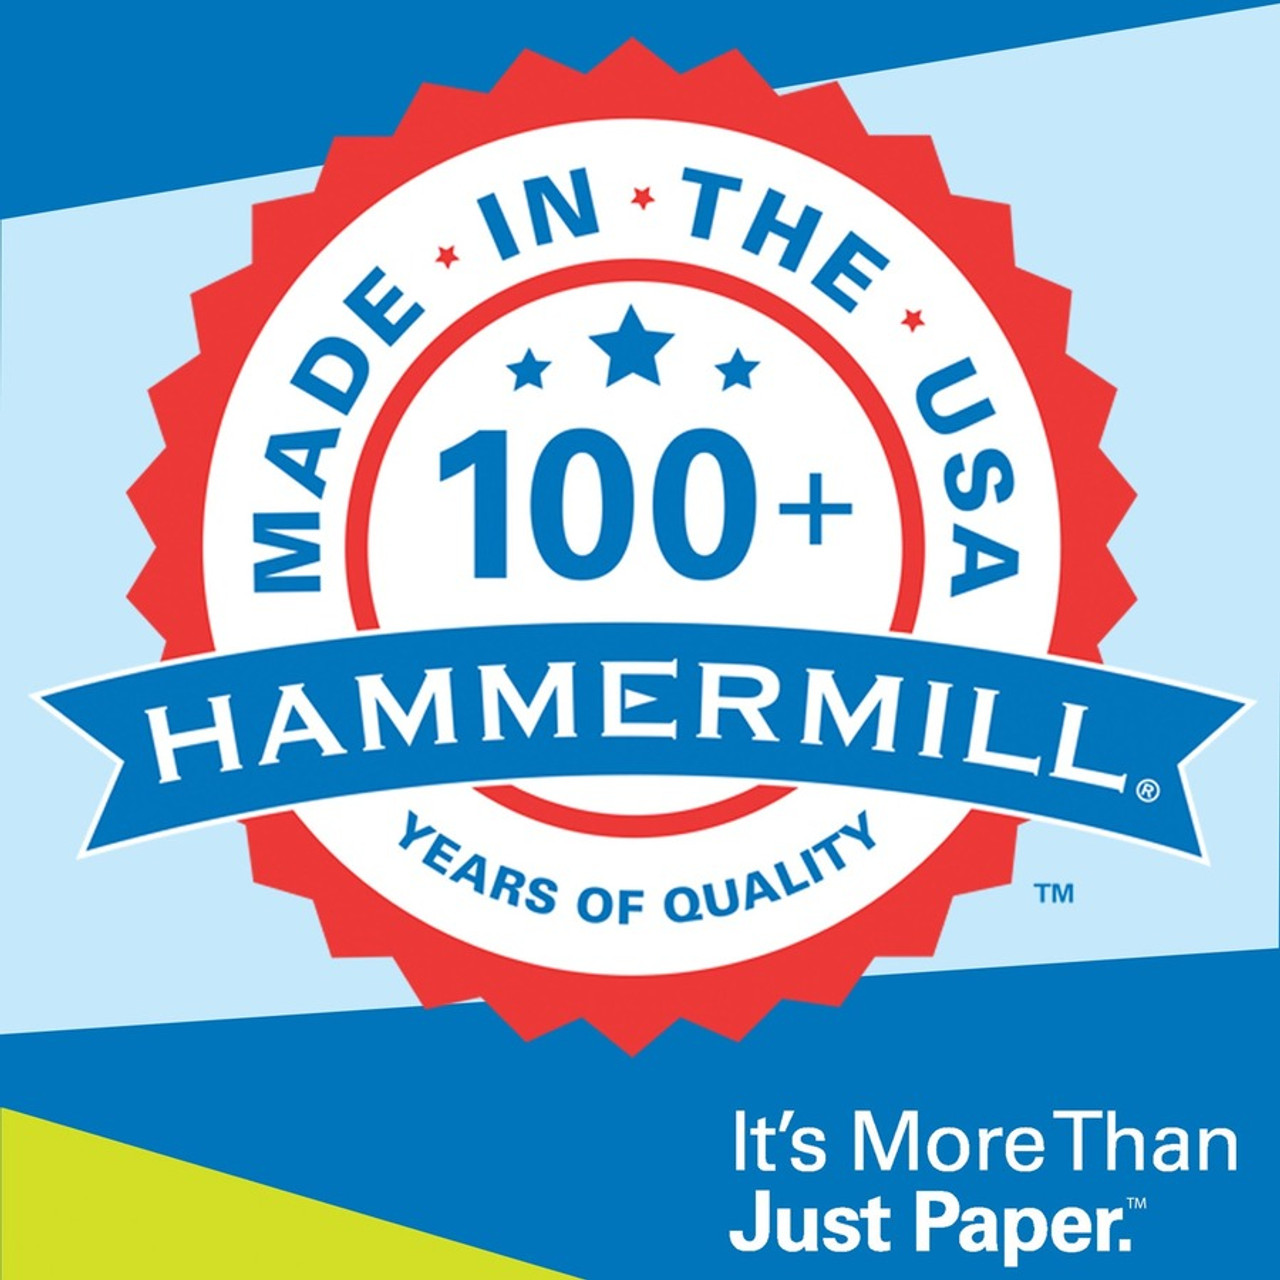 Hammermill Color Copy Paper 8.5 x 11 50 Sheets 28LB Item Number 102467